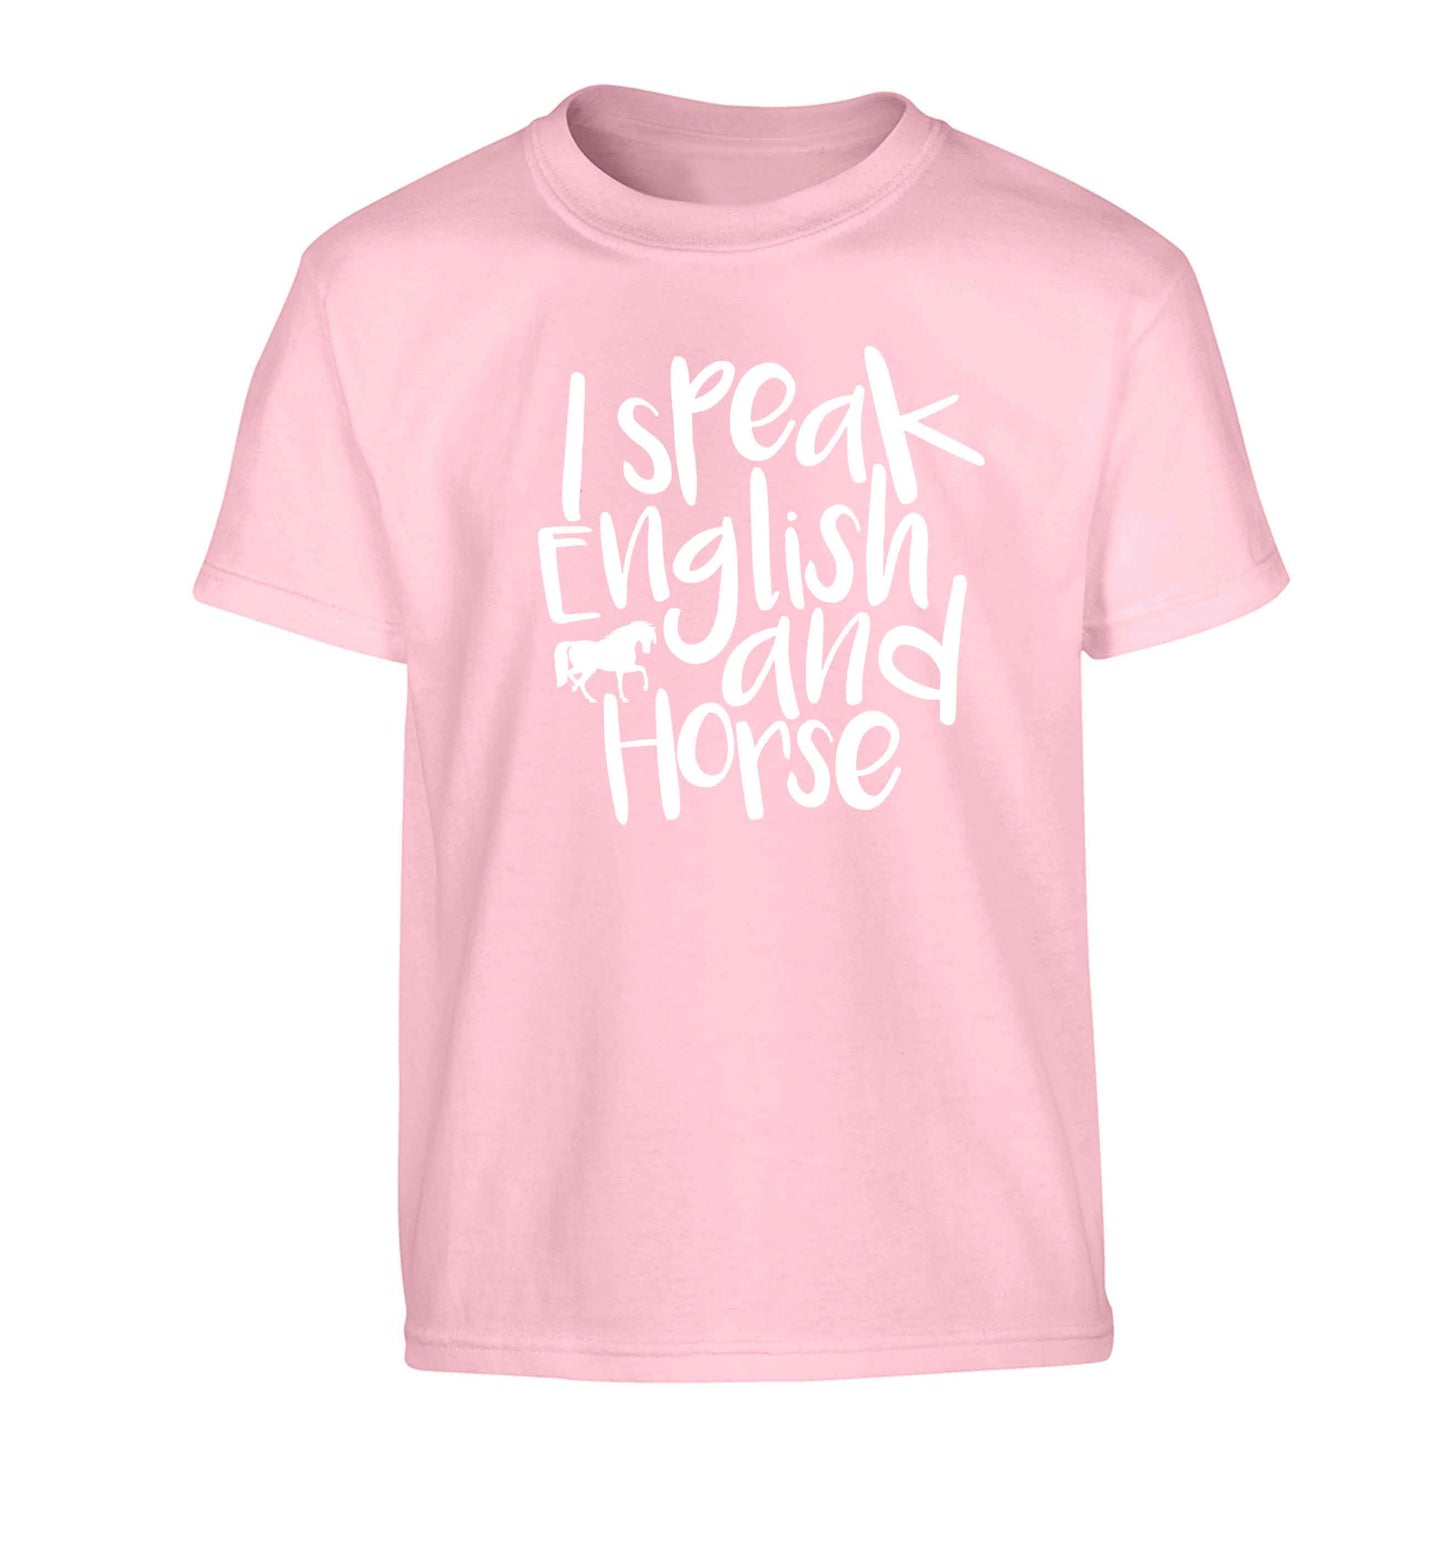 I speak English and horse Children's light pink Tshirt 12-13 Years